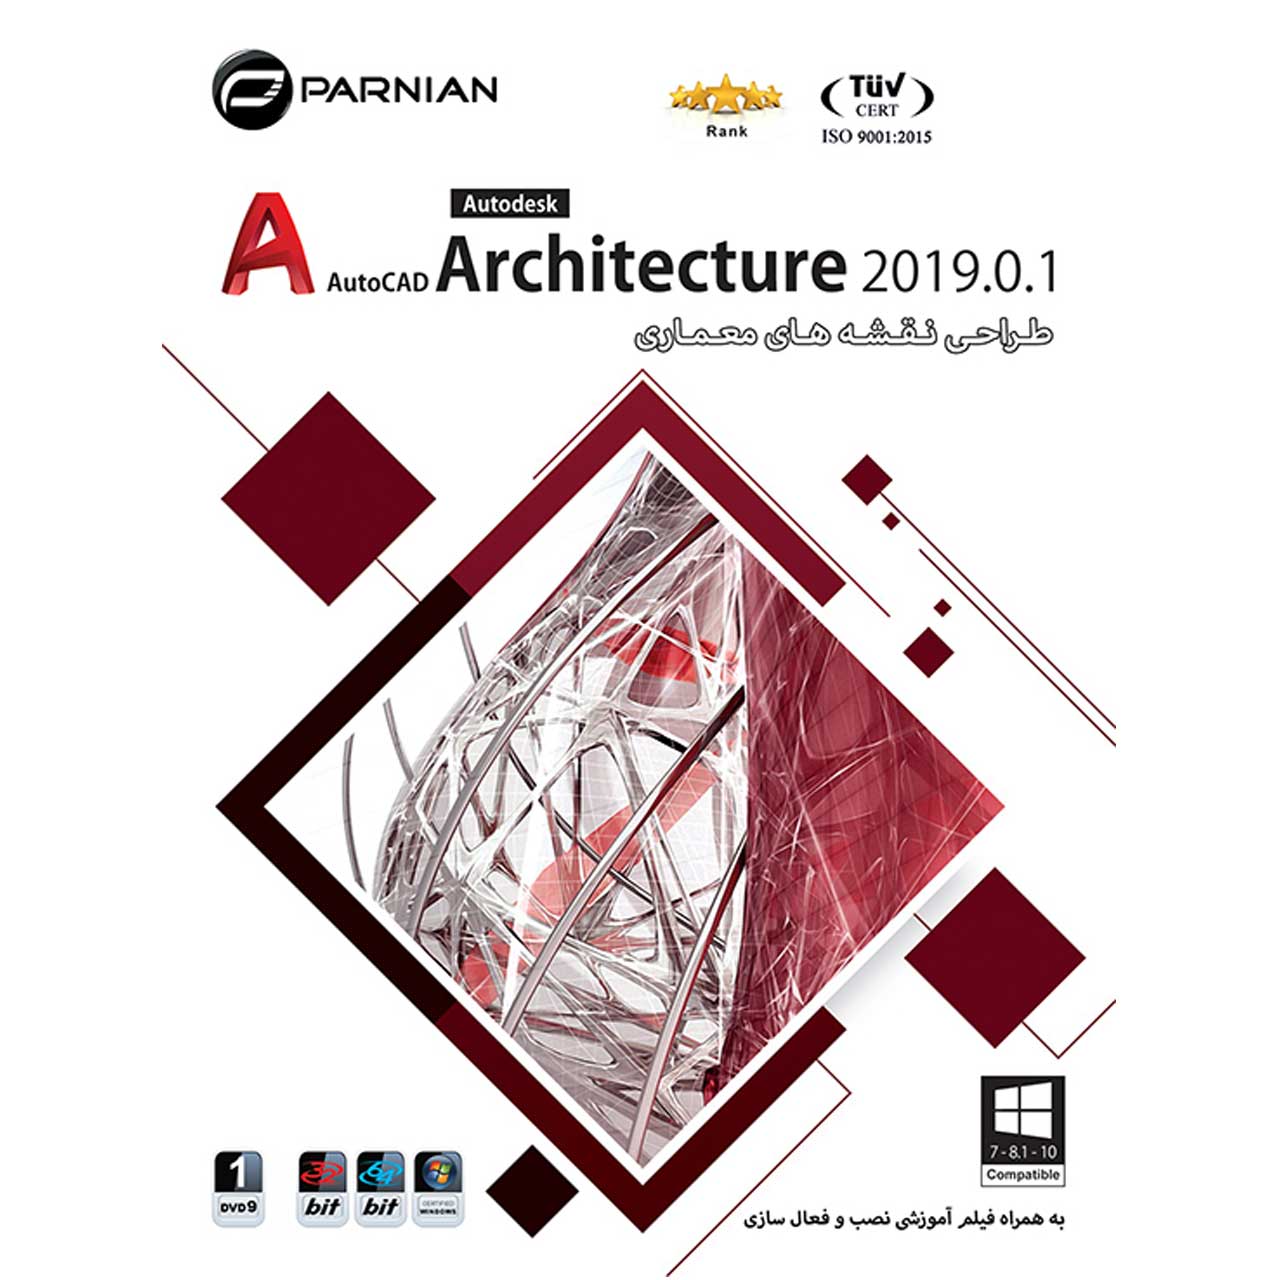 نرم افزار طـراحـی نـقـشـه هـای معـمـاری AutoCAD Architecture 2019.0.1 نشر پرنیان 